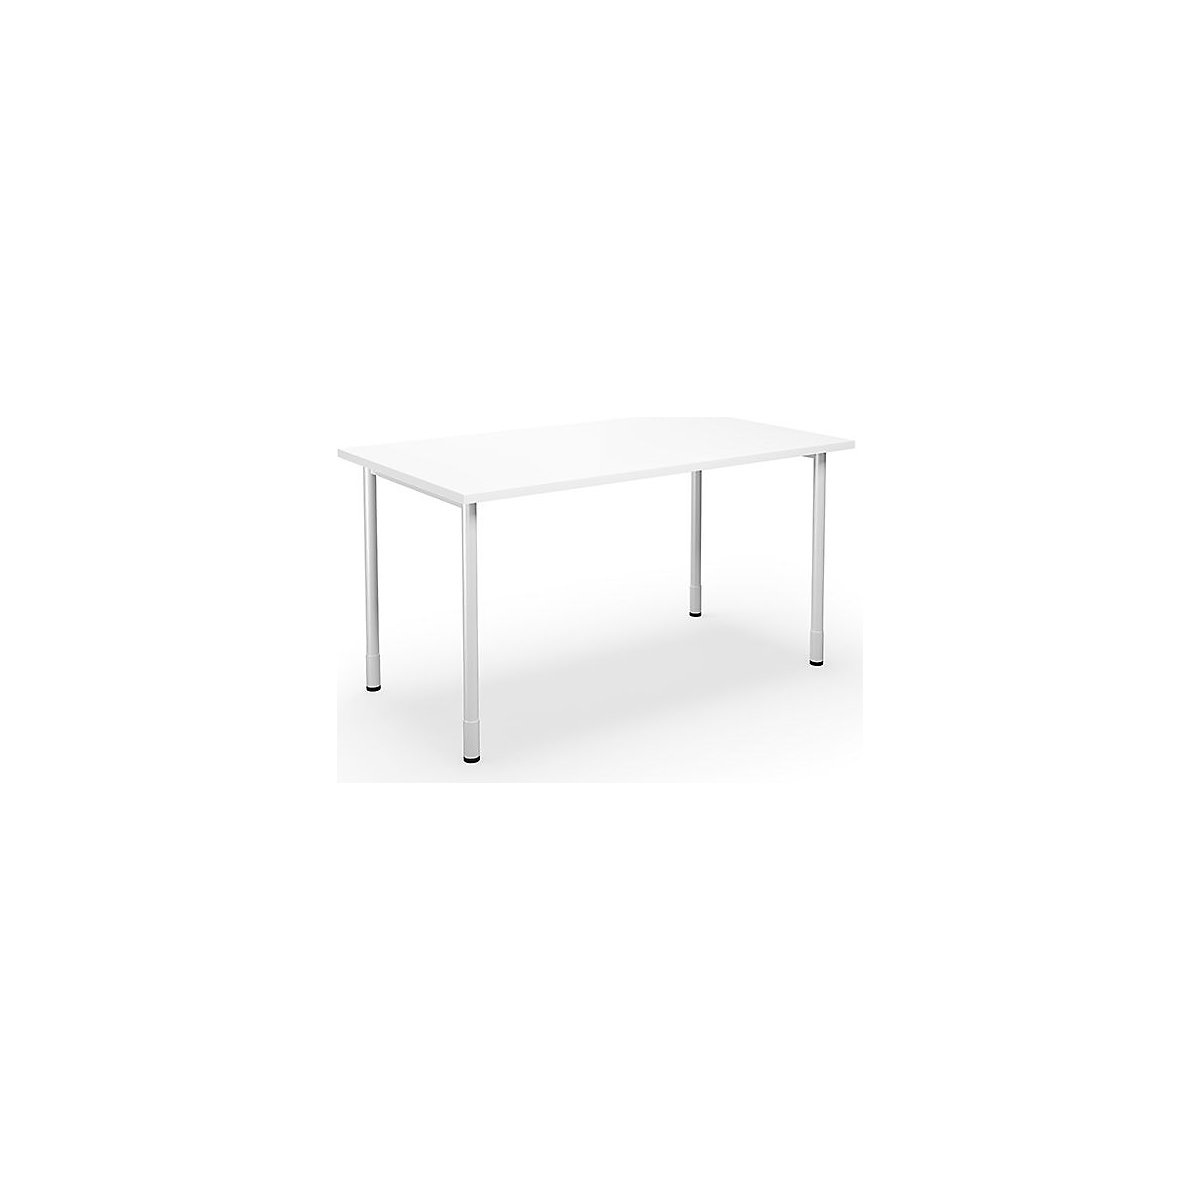 DUO-C multi-purpose desk, straight tabletop, WxD 1400 x 800 mm, white, white-16